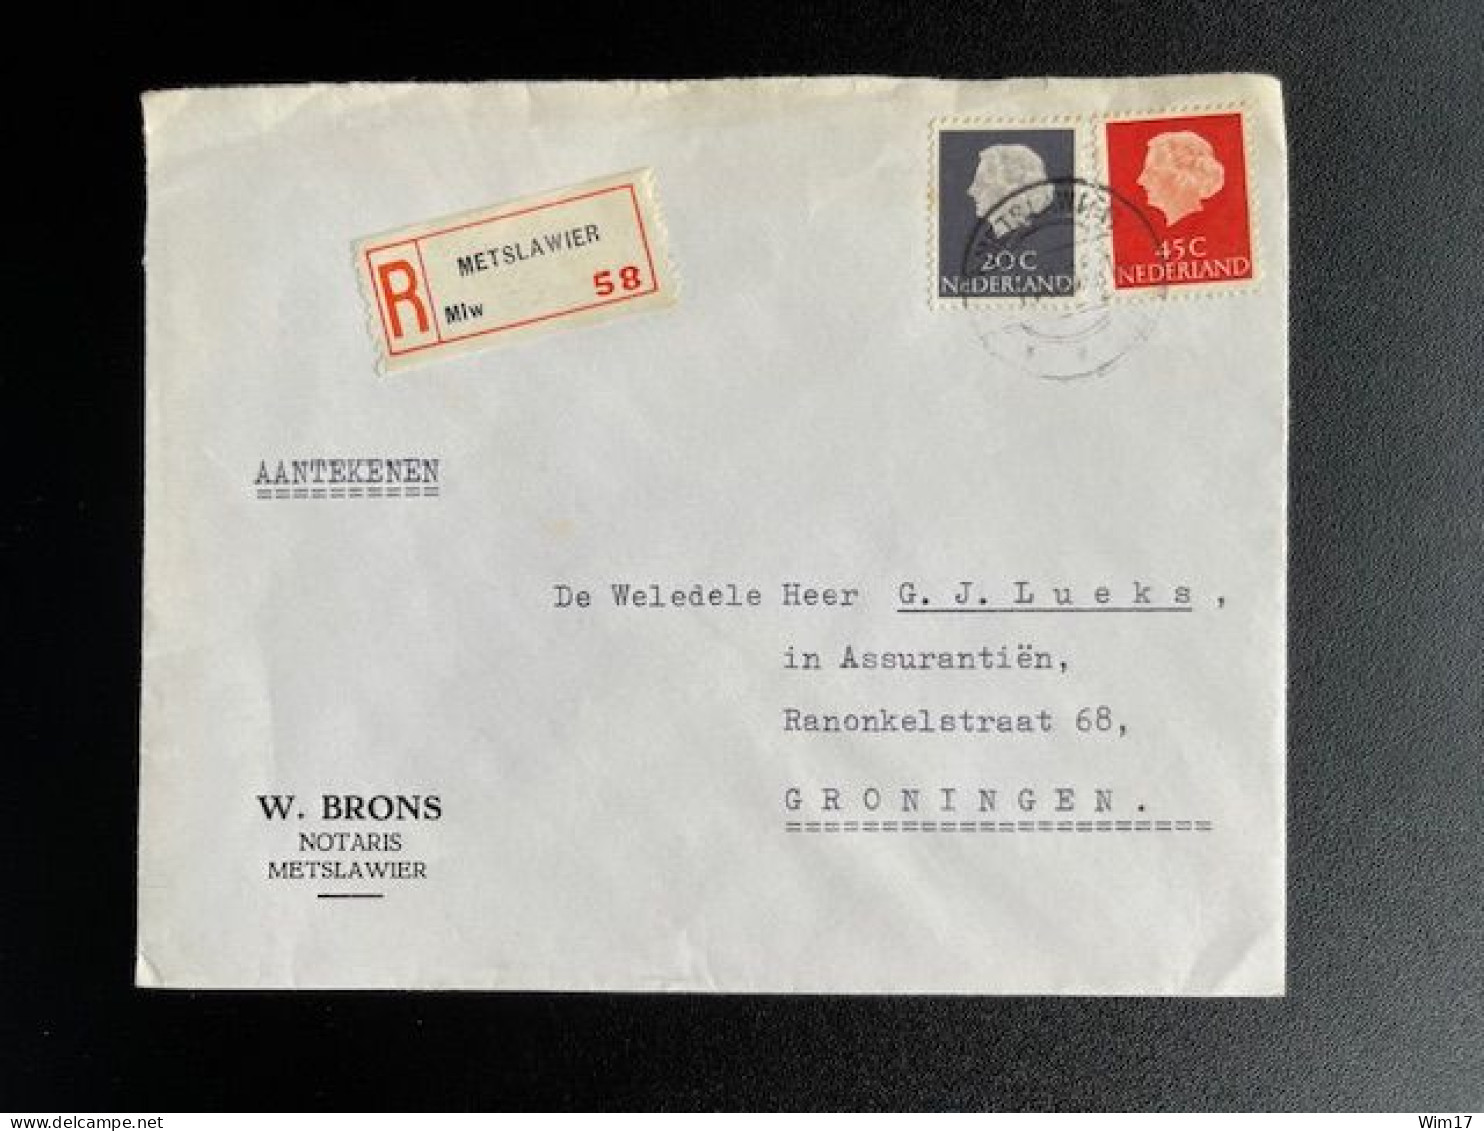 NETHERLANDS 1966 REGISTERED LETTER METSLAWIER TO GRONINGEN 01-11-1966 NEDERLAND AANGETEKEND - Brieven En Documenten